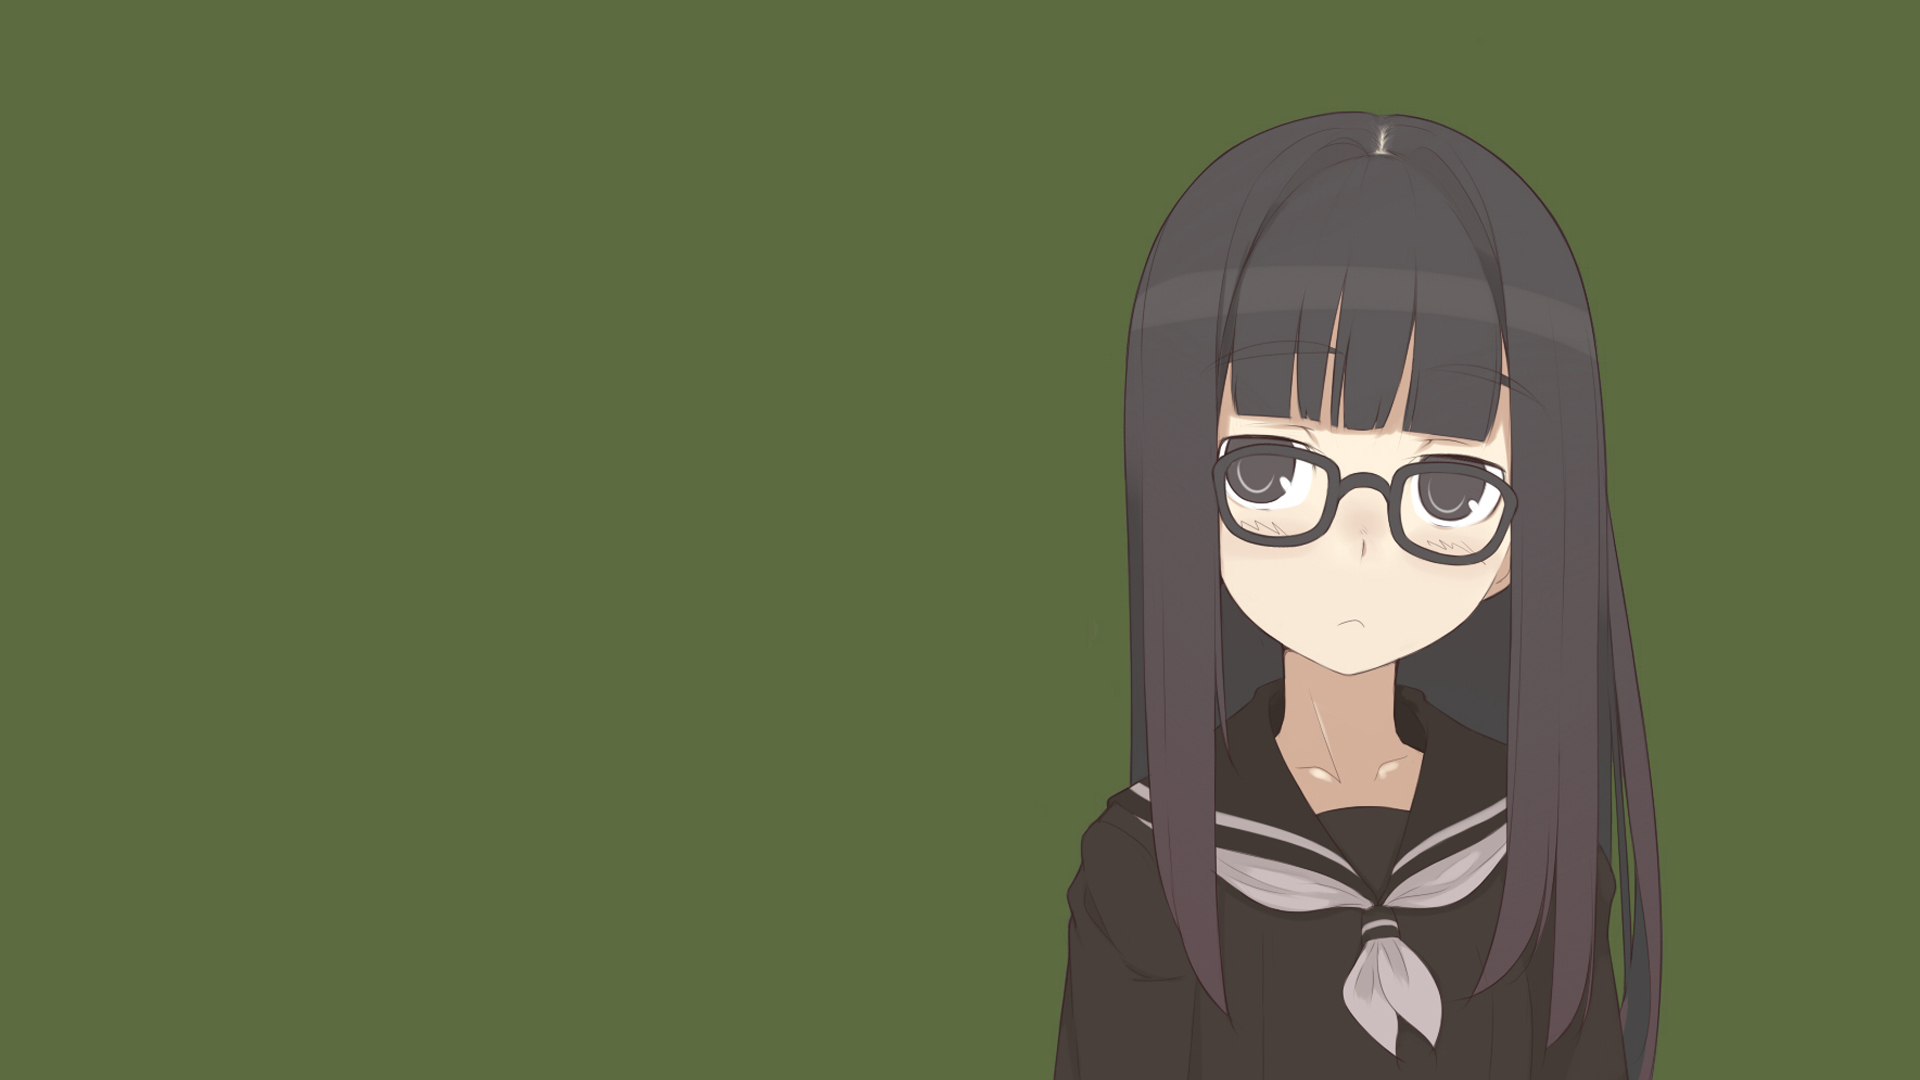 school uniforms, glasses, anime girls, black hair - desktop wallpaper